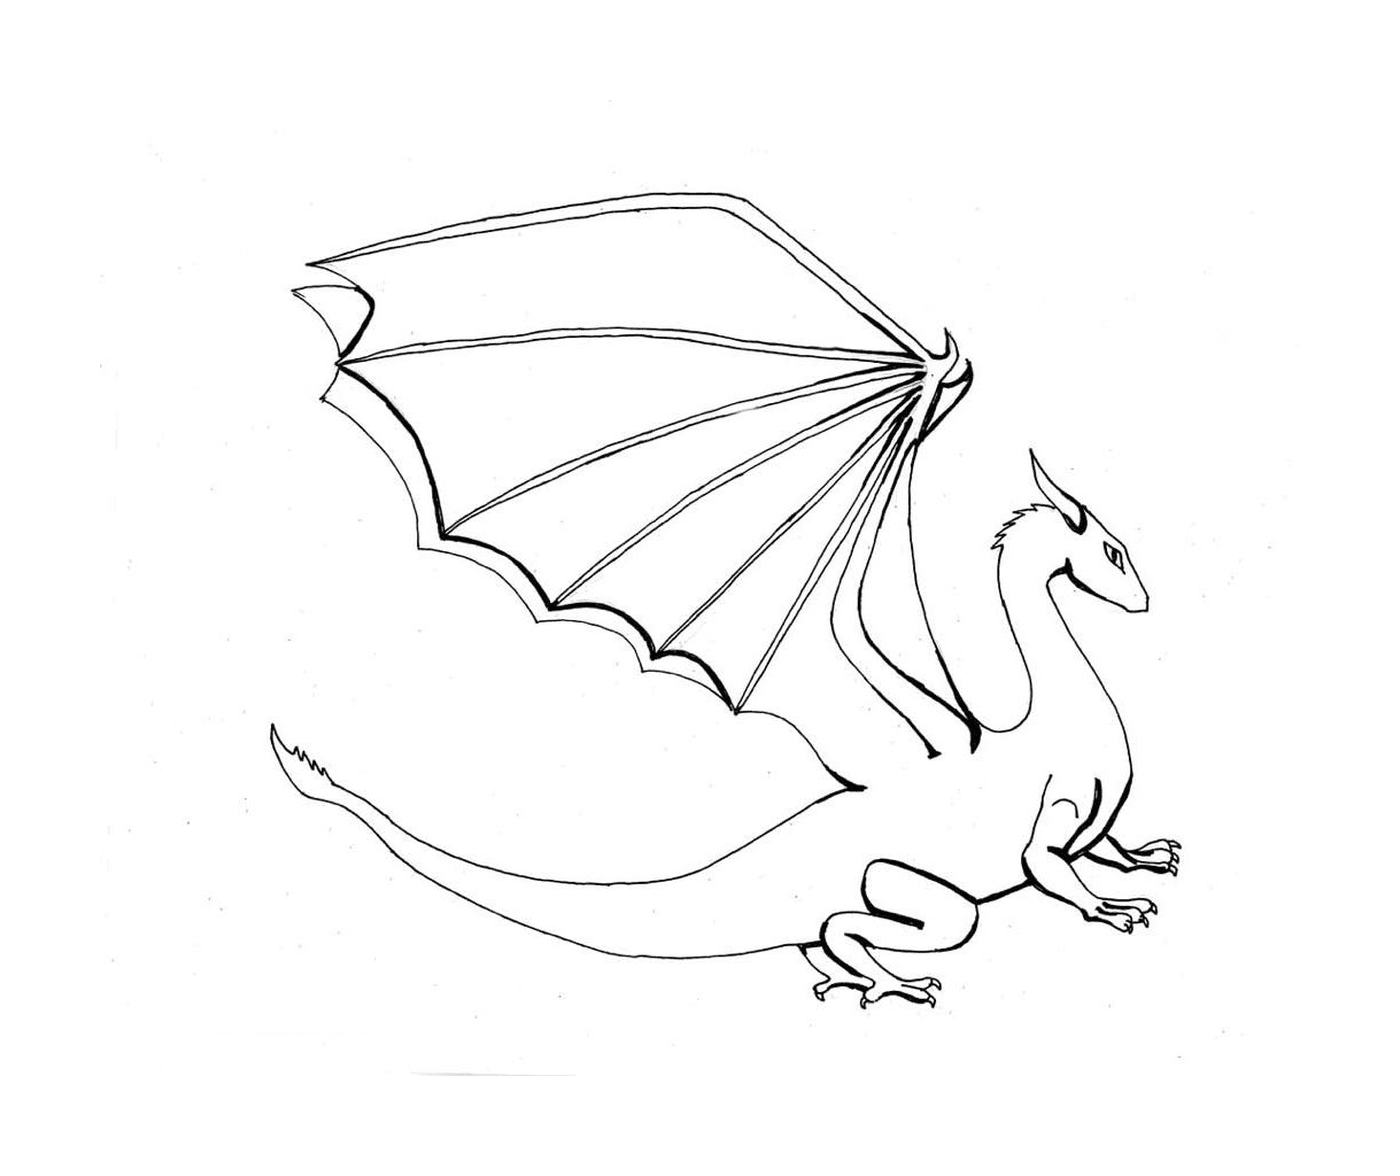  Um dragão branco com uma cauda longa 